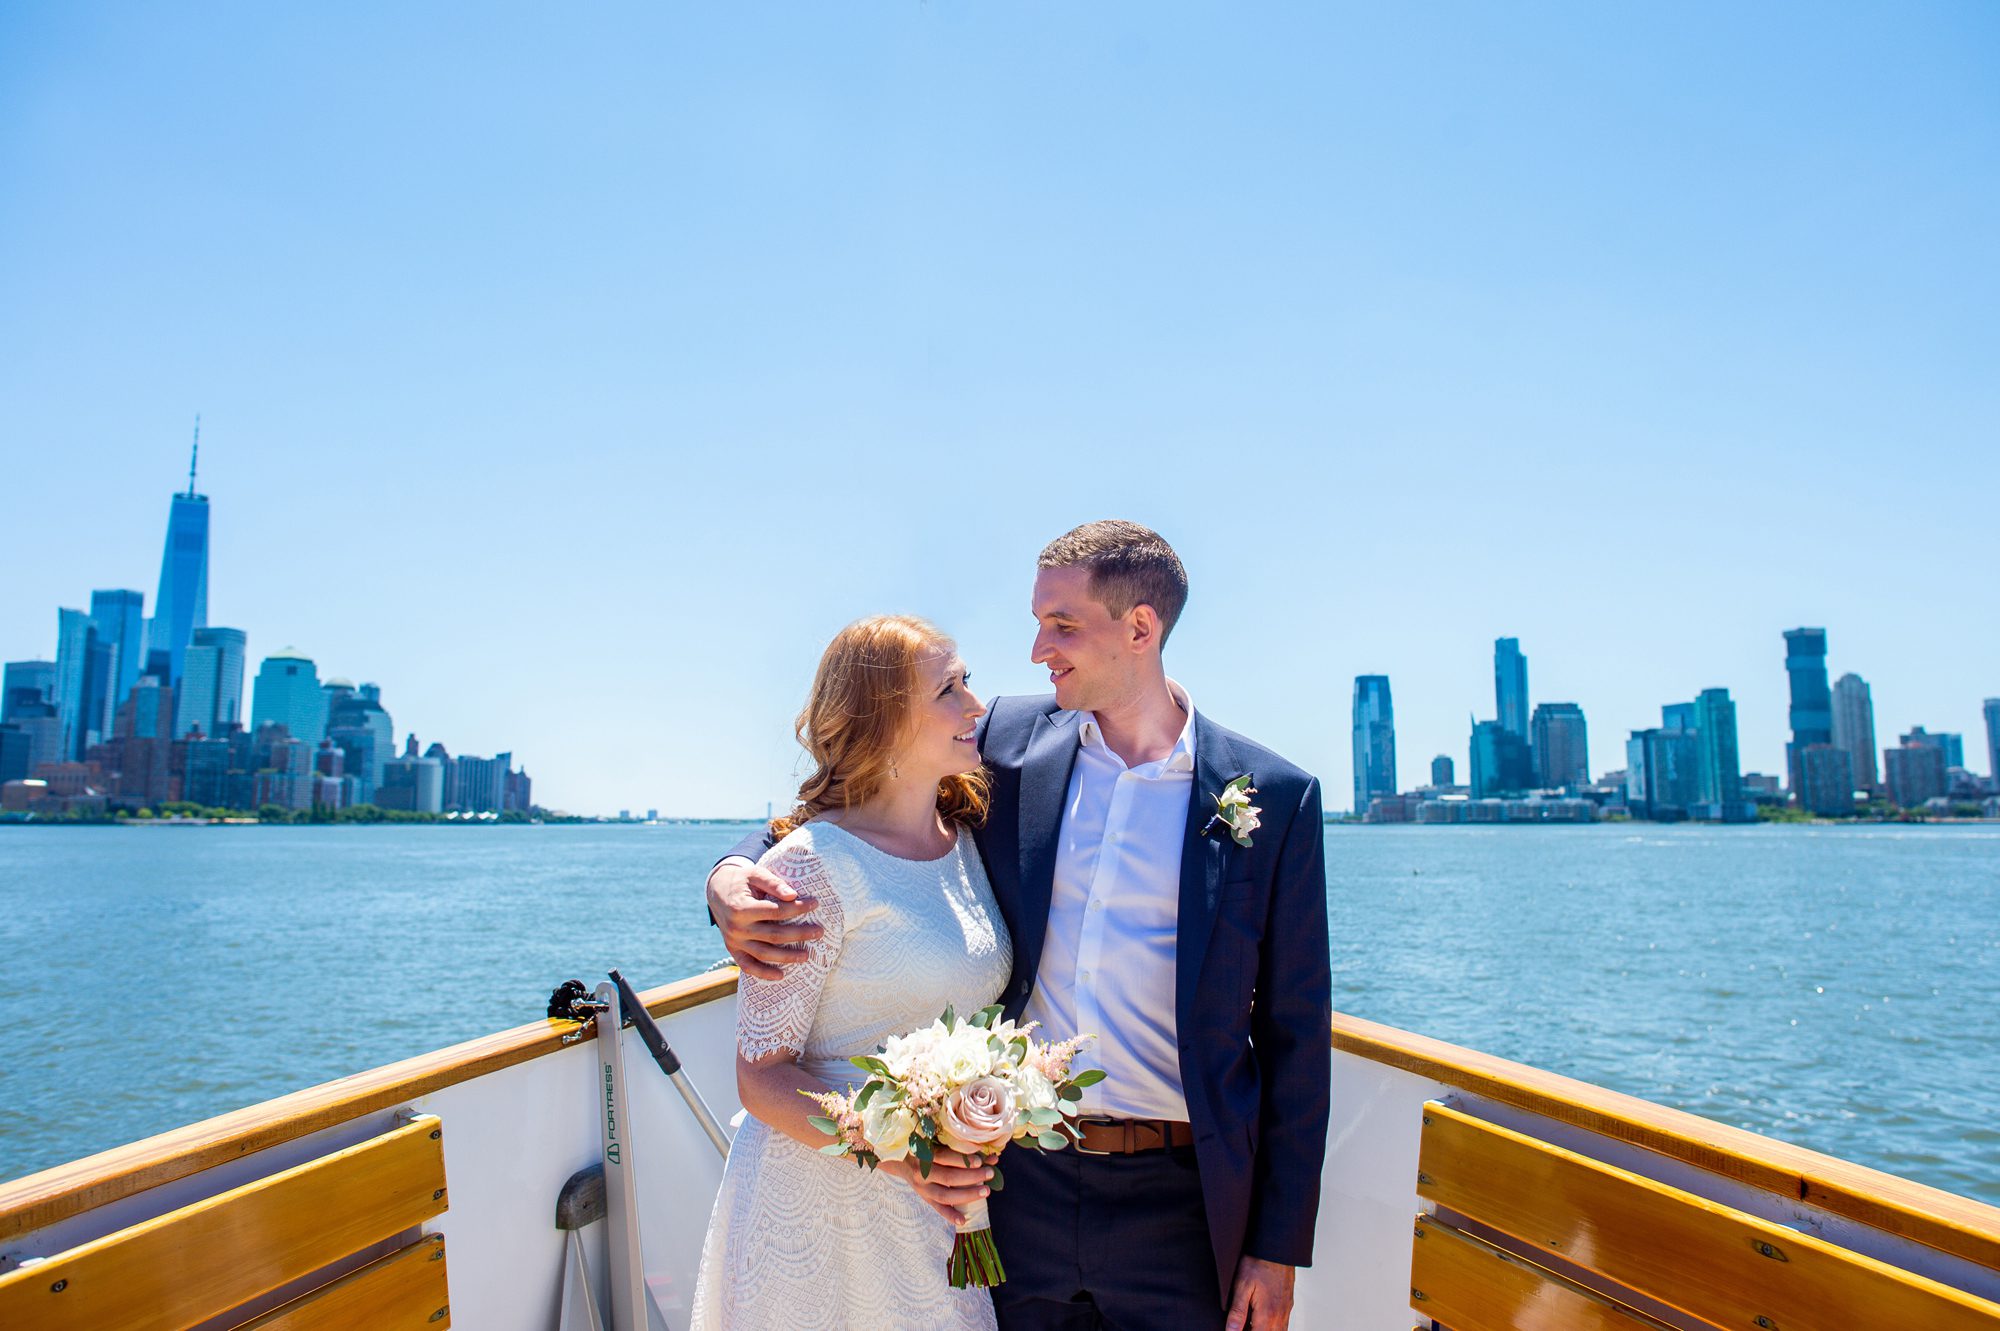 NYC Wedding on a Boat